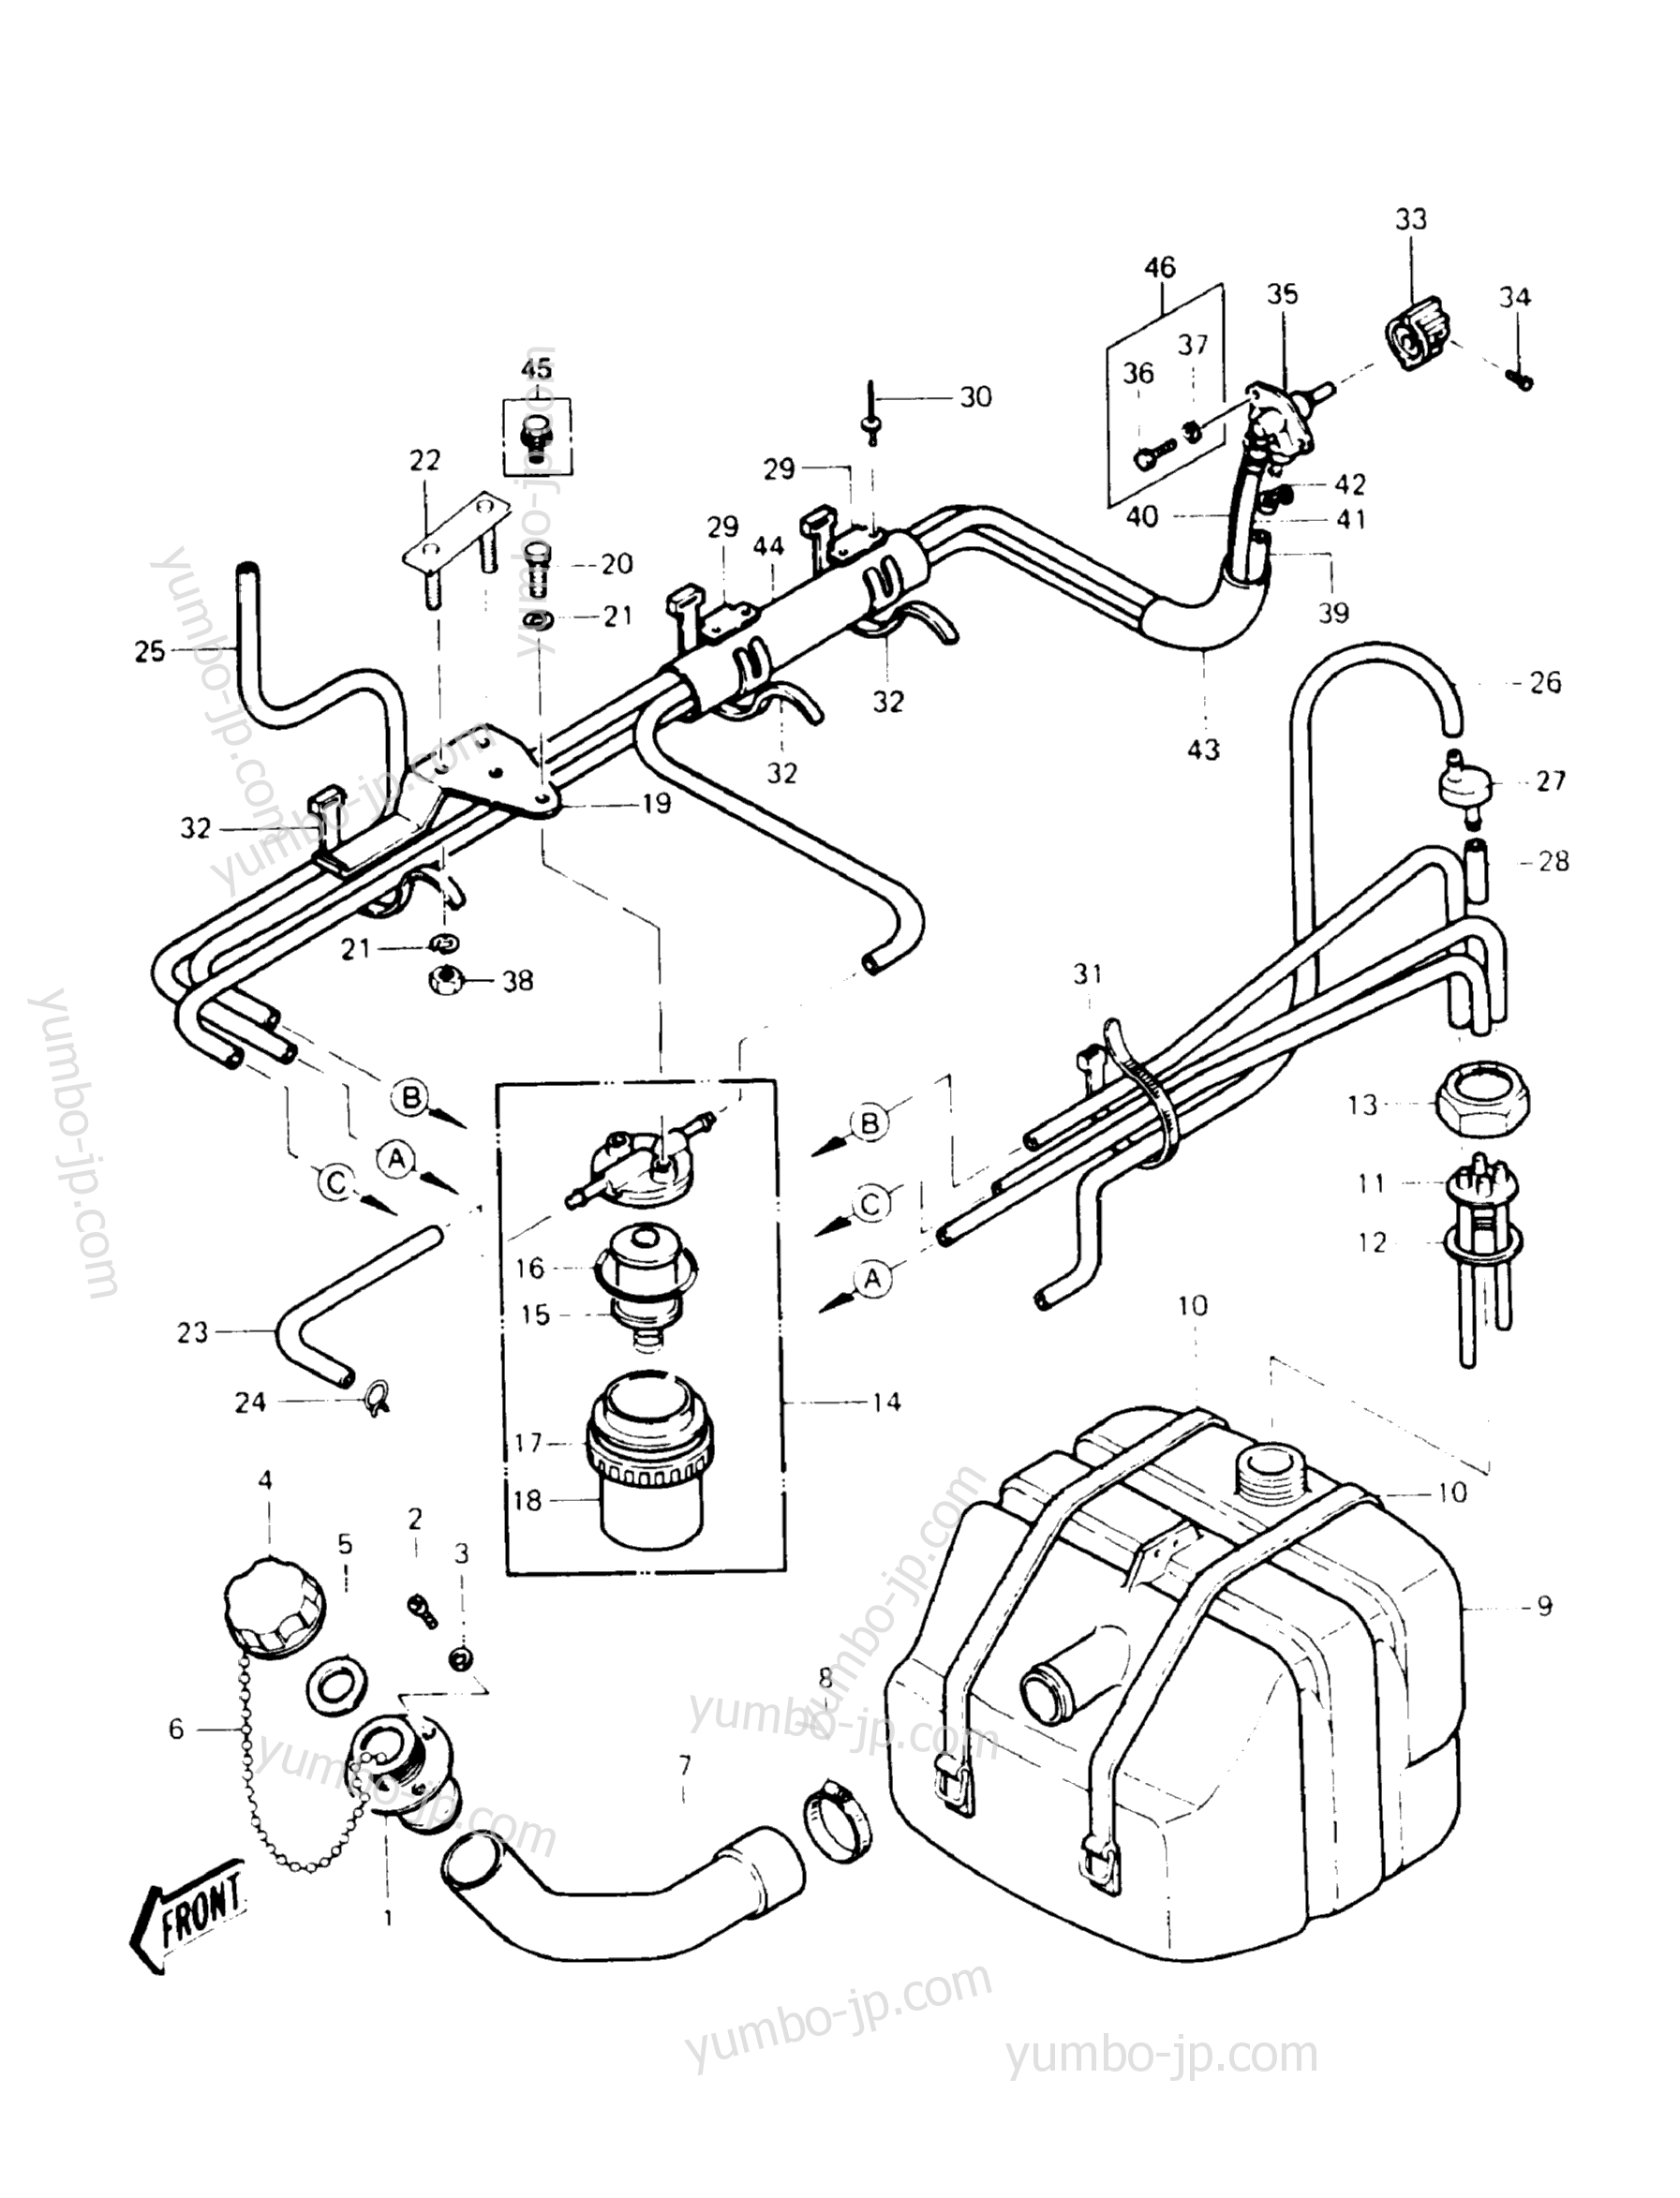 Топливный бак для гидроциклов KAWASAKI JST SKI 440 (JS440-A11) 1987 г.